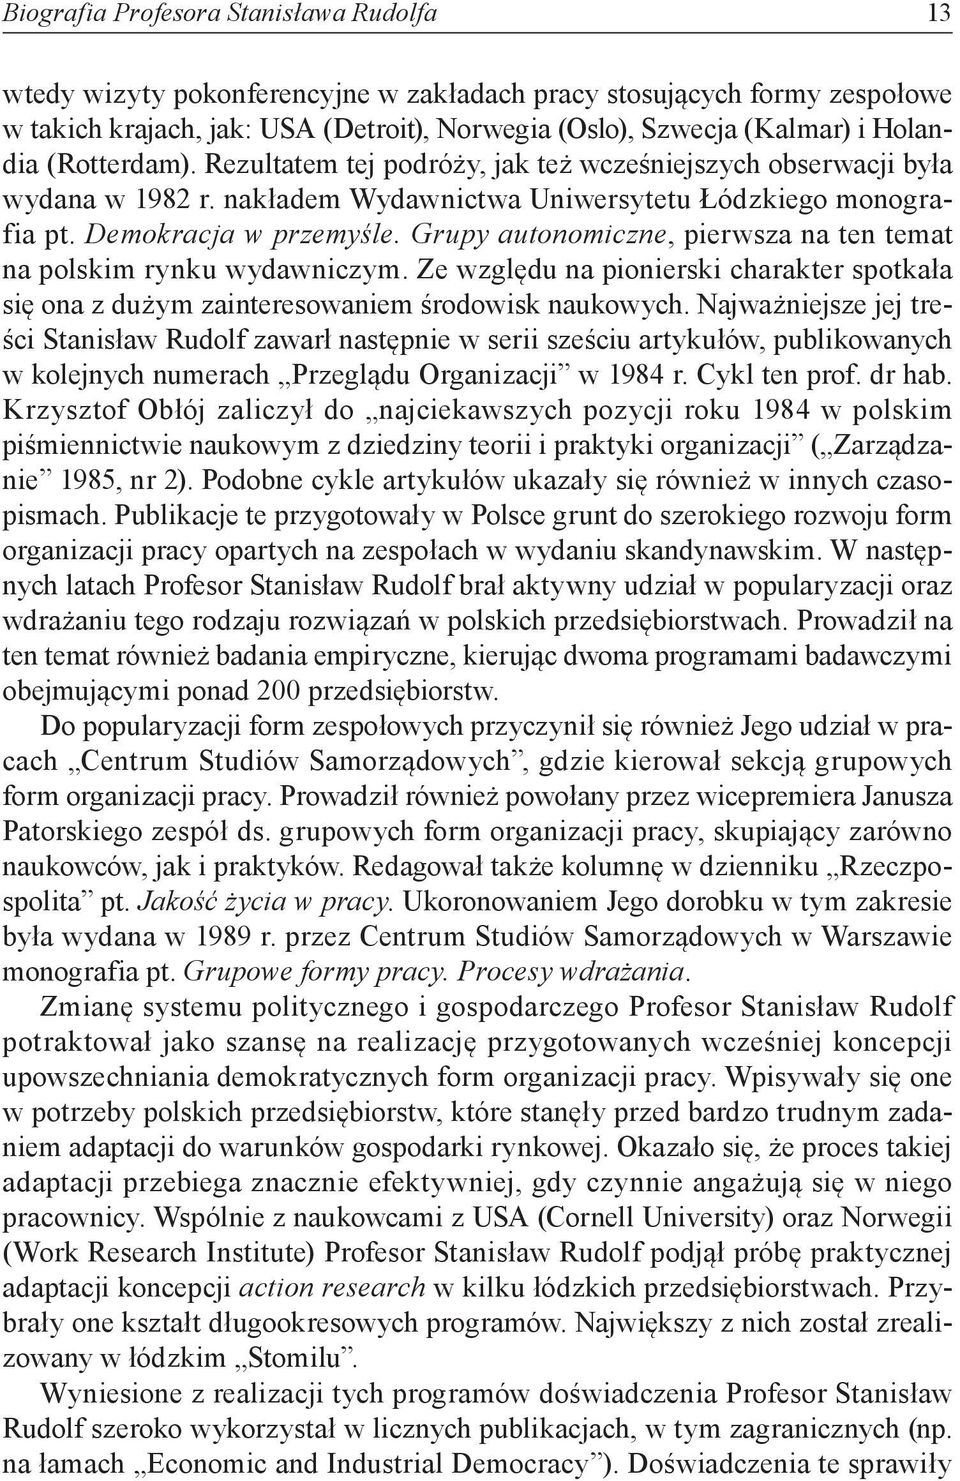 Grupy autonomiczne, pierwsza na ten temat na polskim rynku wydawniczym. Ze względu na pionierski charakter spotkała się ona z dużym zainteresowaniem środowisk naukowych.